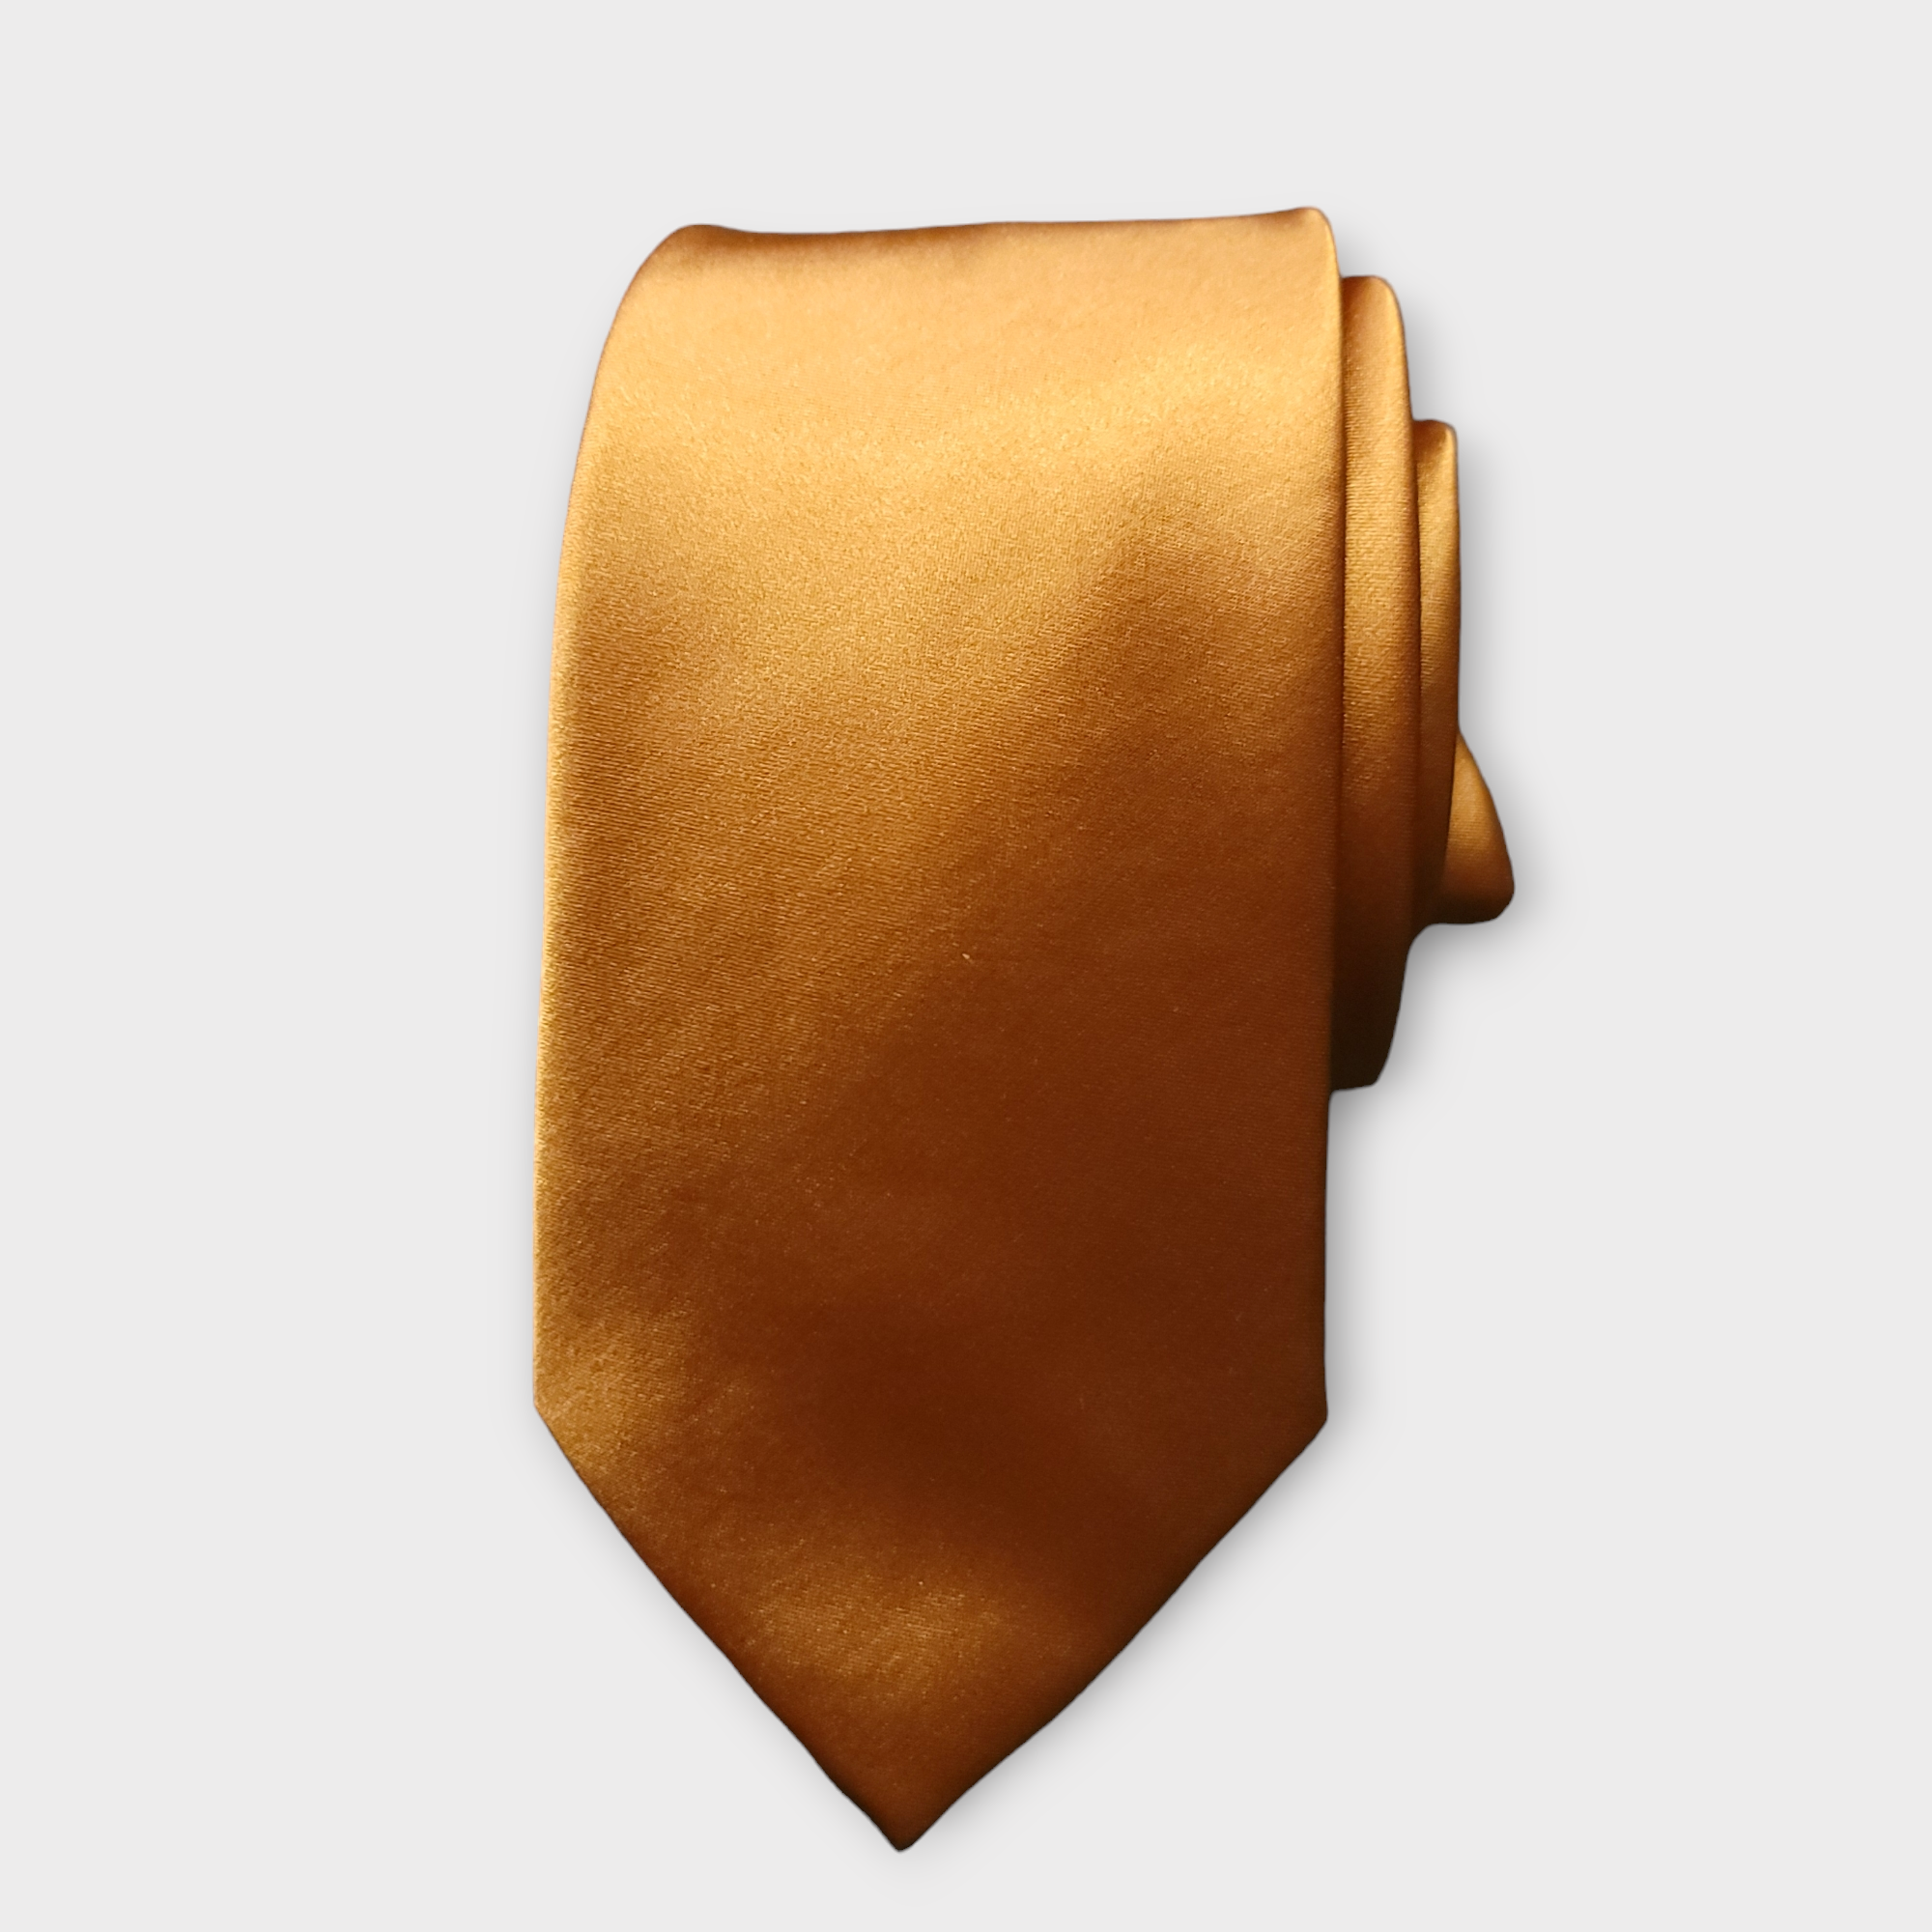 Golden Brown Solid Silk Tie Pocket Square Cufflink Set